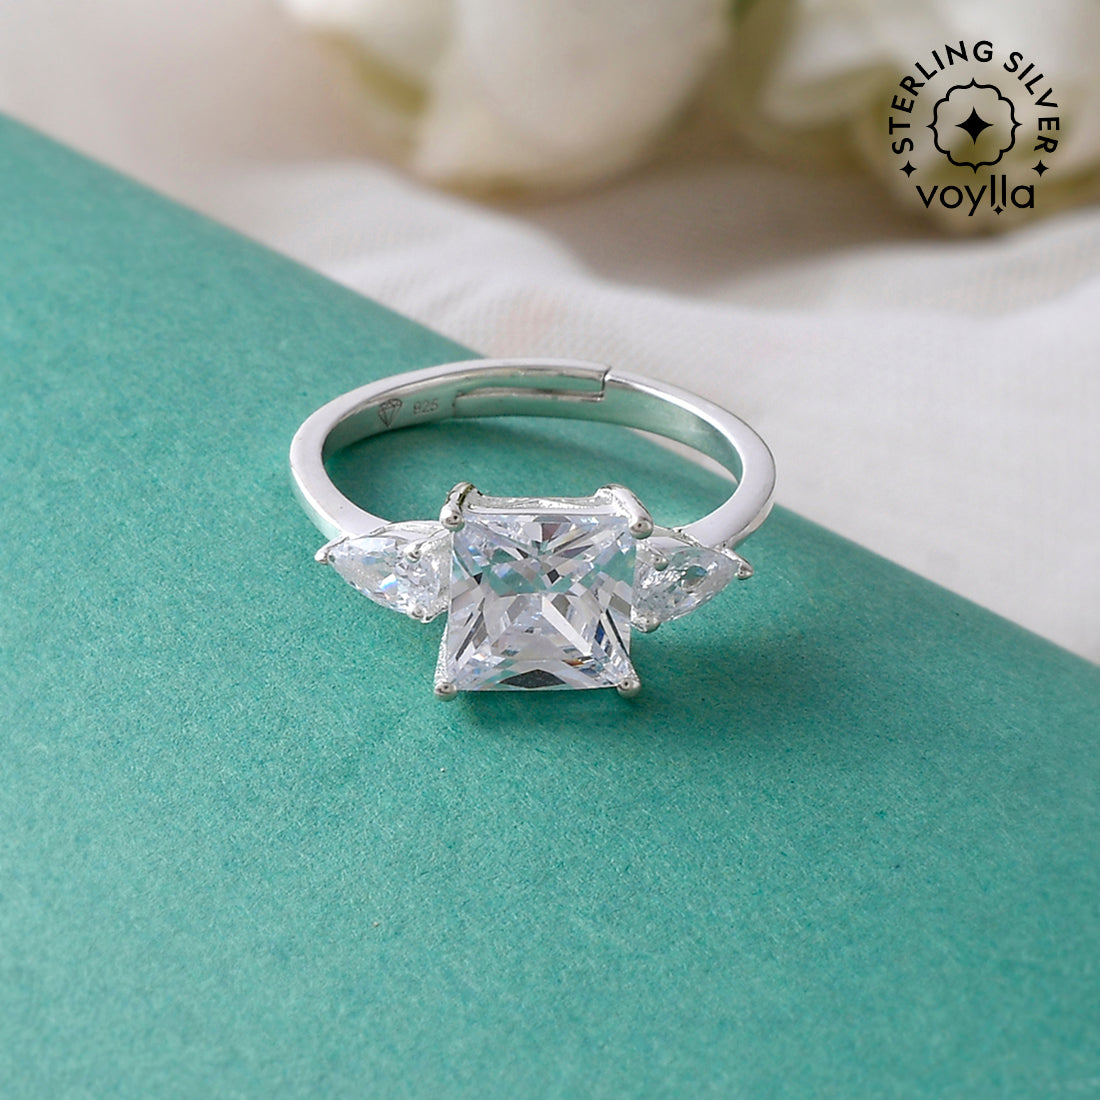 Sterling Silver Elegant Design Ring